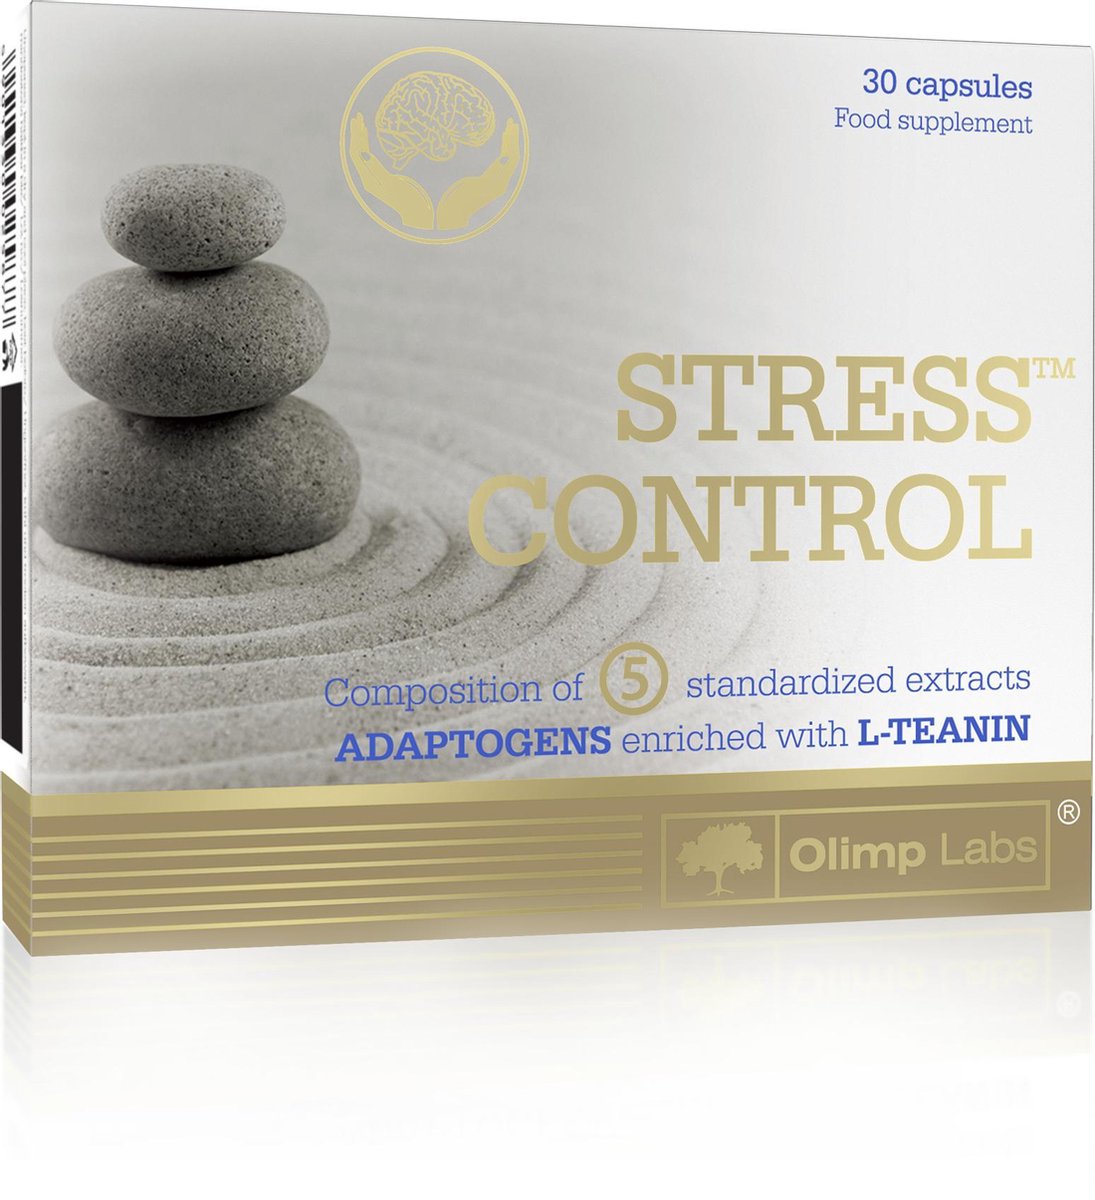 Stress Control 30 caps, 6 ADAPTOGENS die 5 gestandaardiseerde plantenextracten bevatten en L-theanine – een natuurlijk aminozuur uit groene thee. Actieve ingrediënten van ADAPTOGENS versterken de adaptieve reactie van het lichaam op alledaagse stress